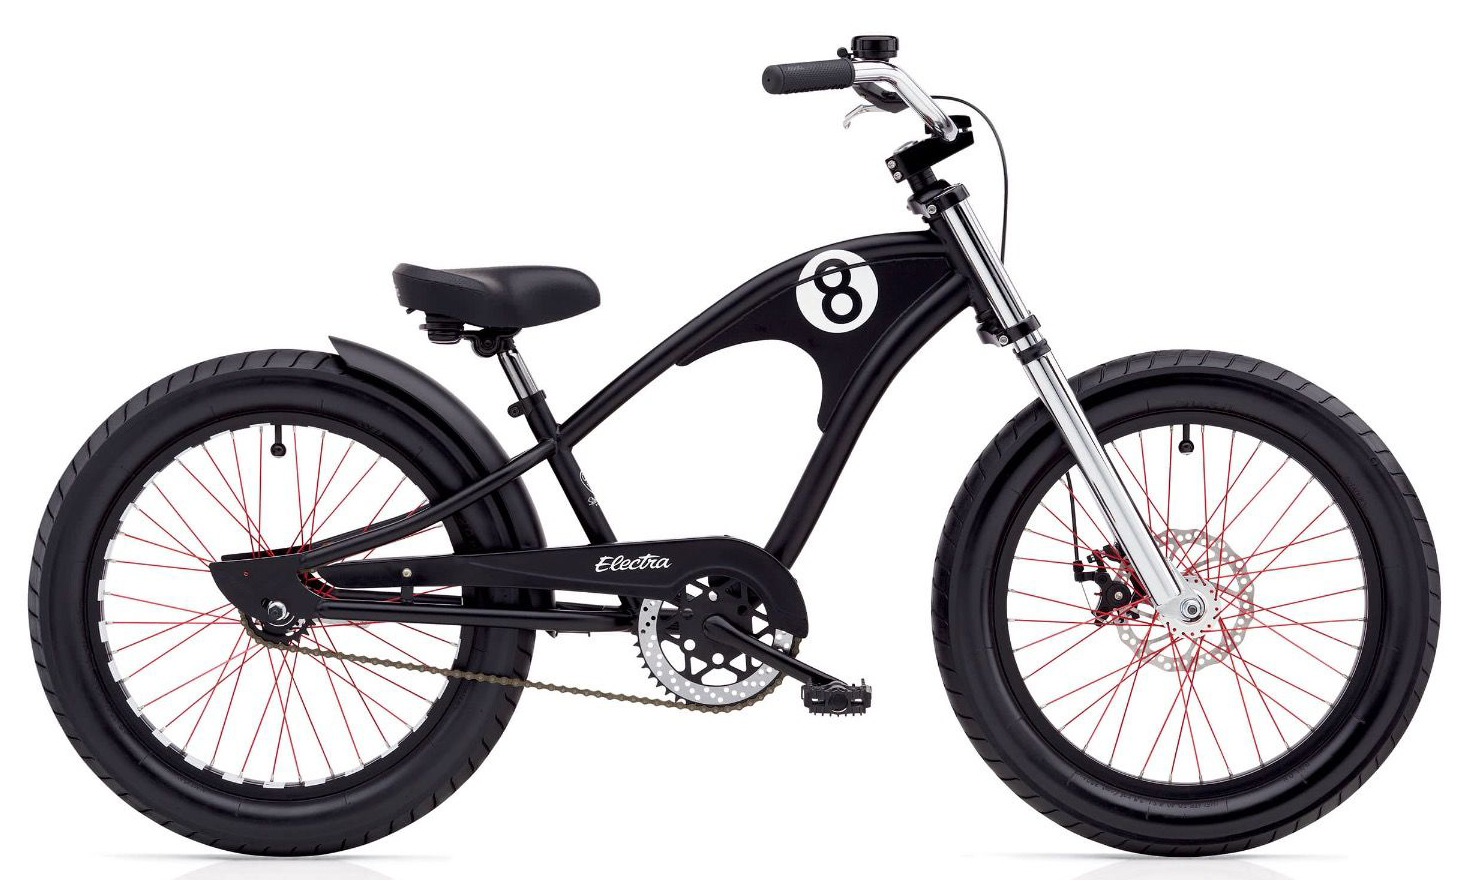  Отзывы о Детском велосипеде Electra Straight 8 3i '20 2019